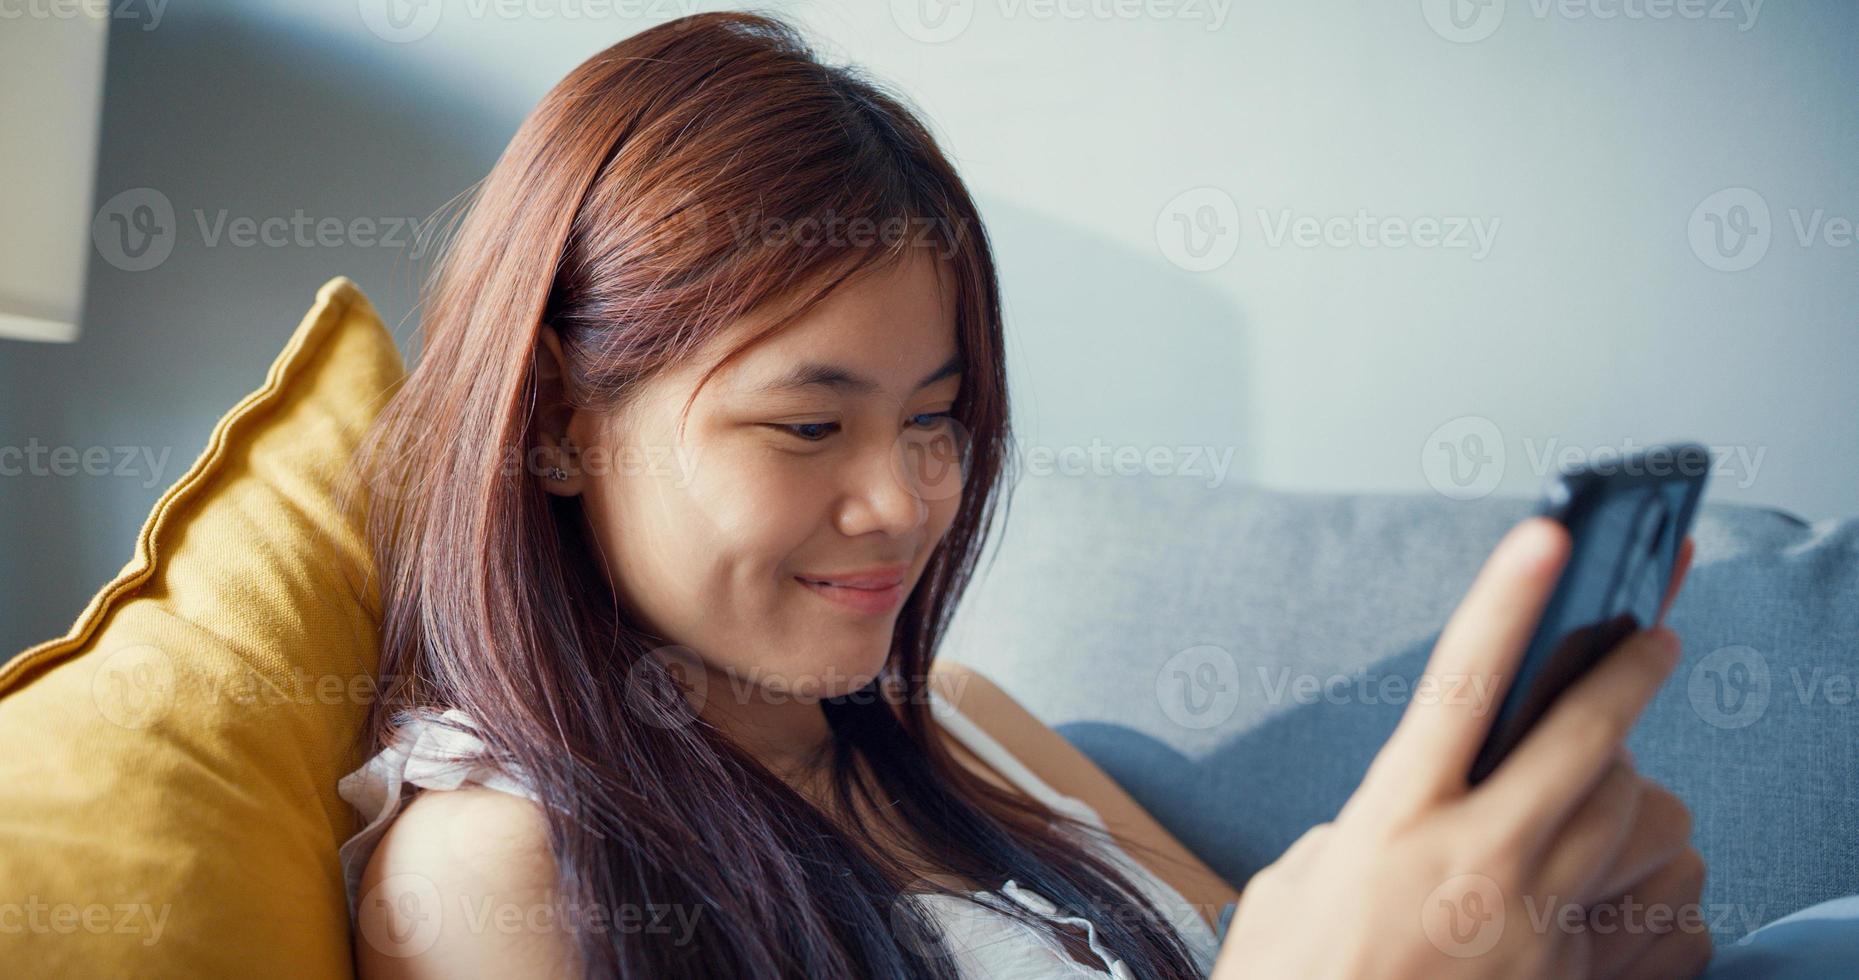 Jeune fille heureuse d'Asie avec un temps de détente utiliser un smartphone s'amuser à bavarder avec des amis de l'université dans le salon à la maison. isoler le mode de vie de l'activité, concept de pandémie de coronavirus à distance sociale. photo